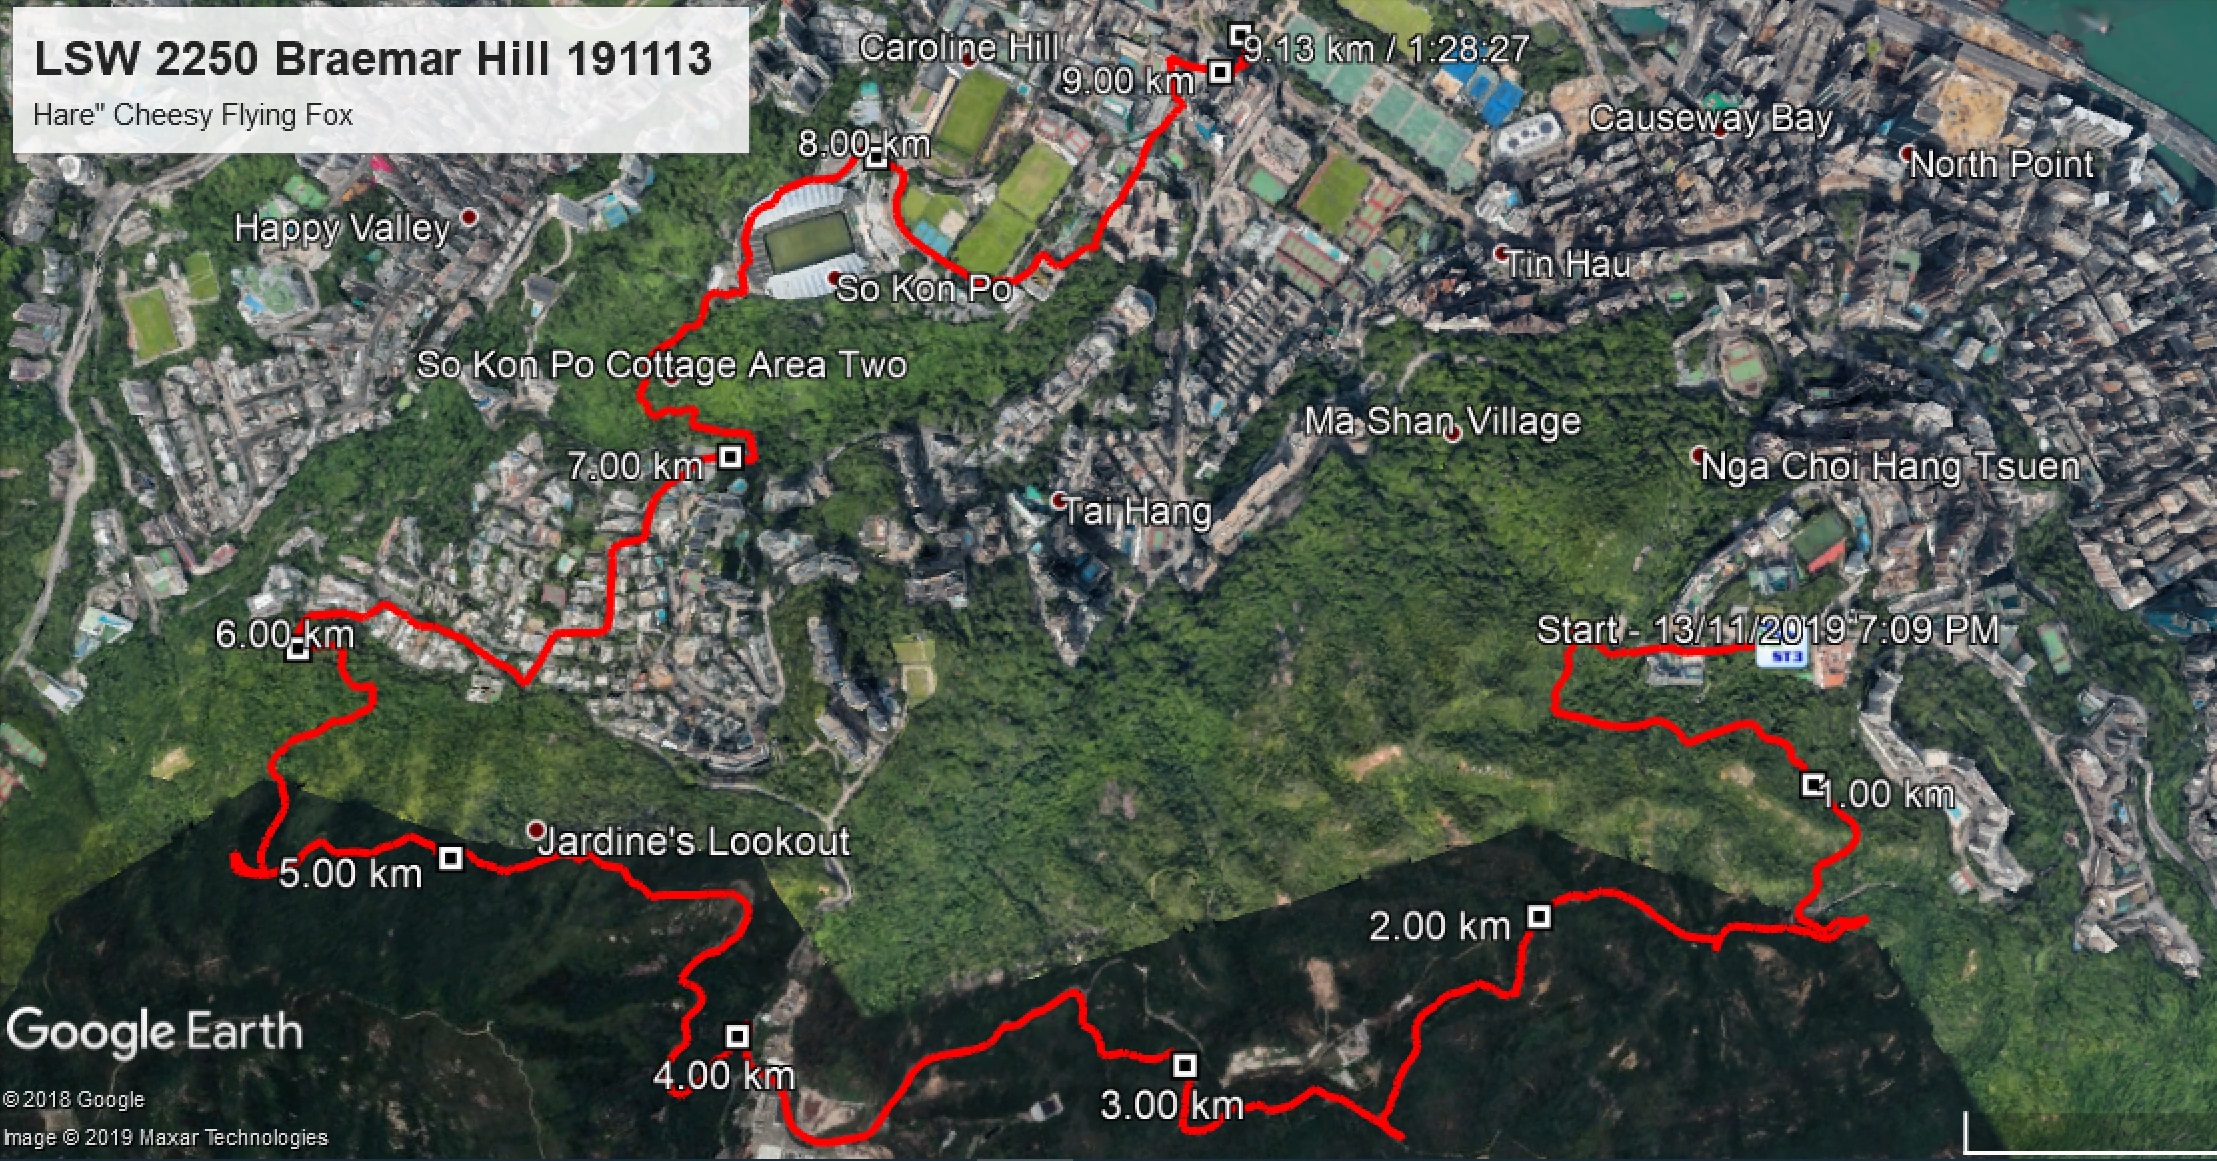 Braemar Hill 191113 9.13km